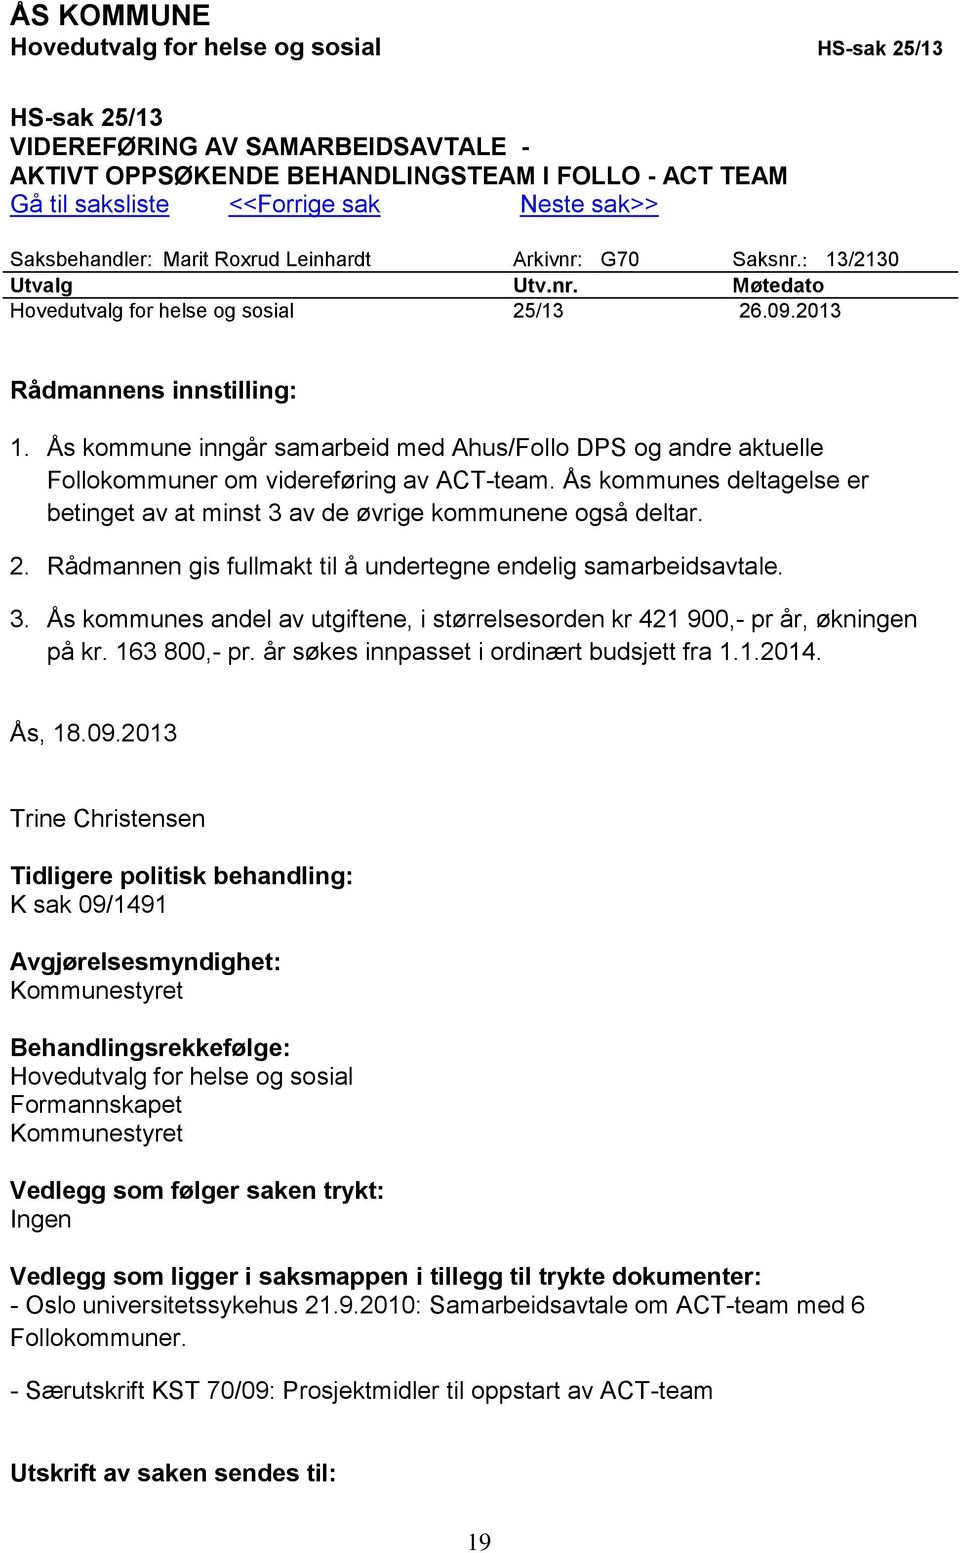 Ås kommune inngår samarbeid med Ahus/Follo DPS og andre aktuelle Follokommuner om videreføring av ACT-team. Ås kommunes deltagelse er betinget av at minst 3 av de øvrige kommunene også deltar. 2.